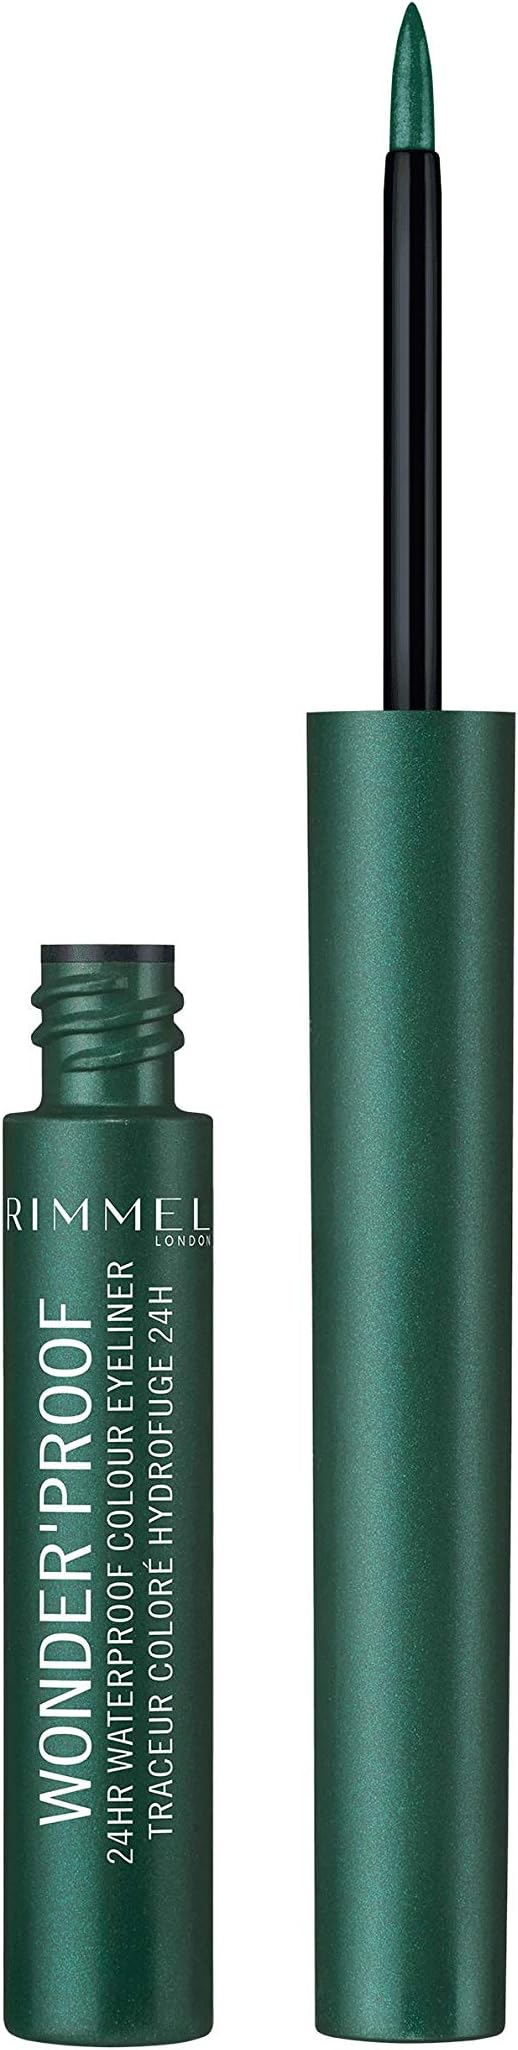 Rimmel Wonderproof 24hr Waterproof Colour Eyeliner 003 Precious Emerald 1.4ml